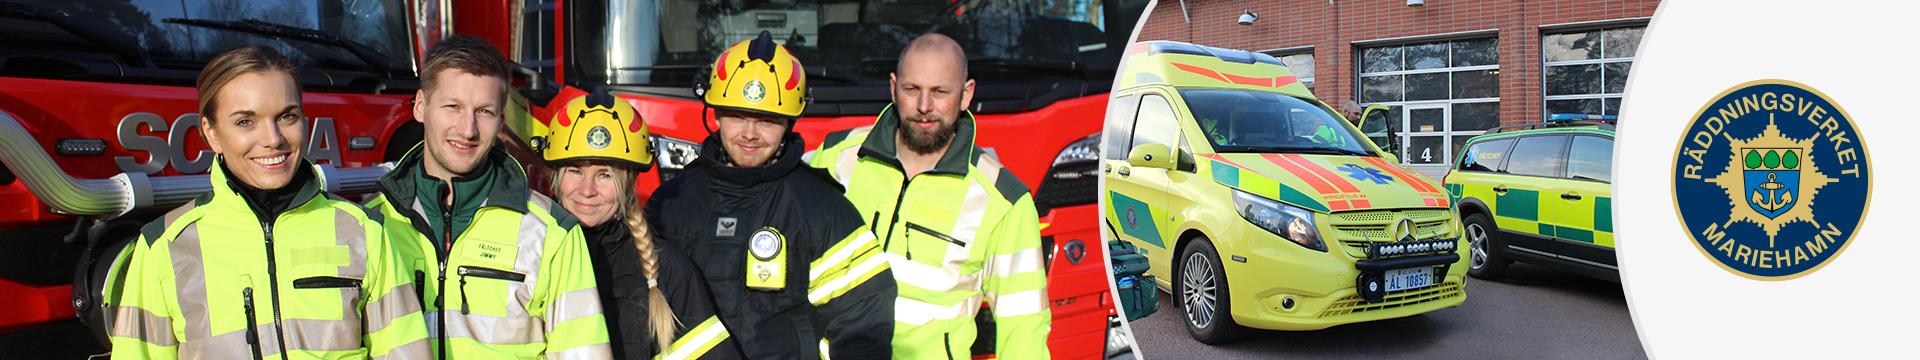 Kollaget visar brandmän och ambulansförare framför sina bilar plus märket för Räddningsverket